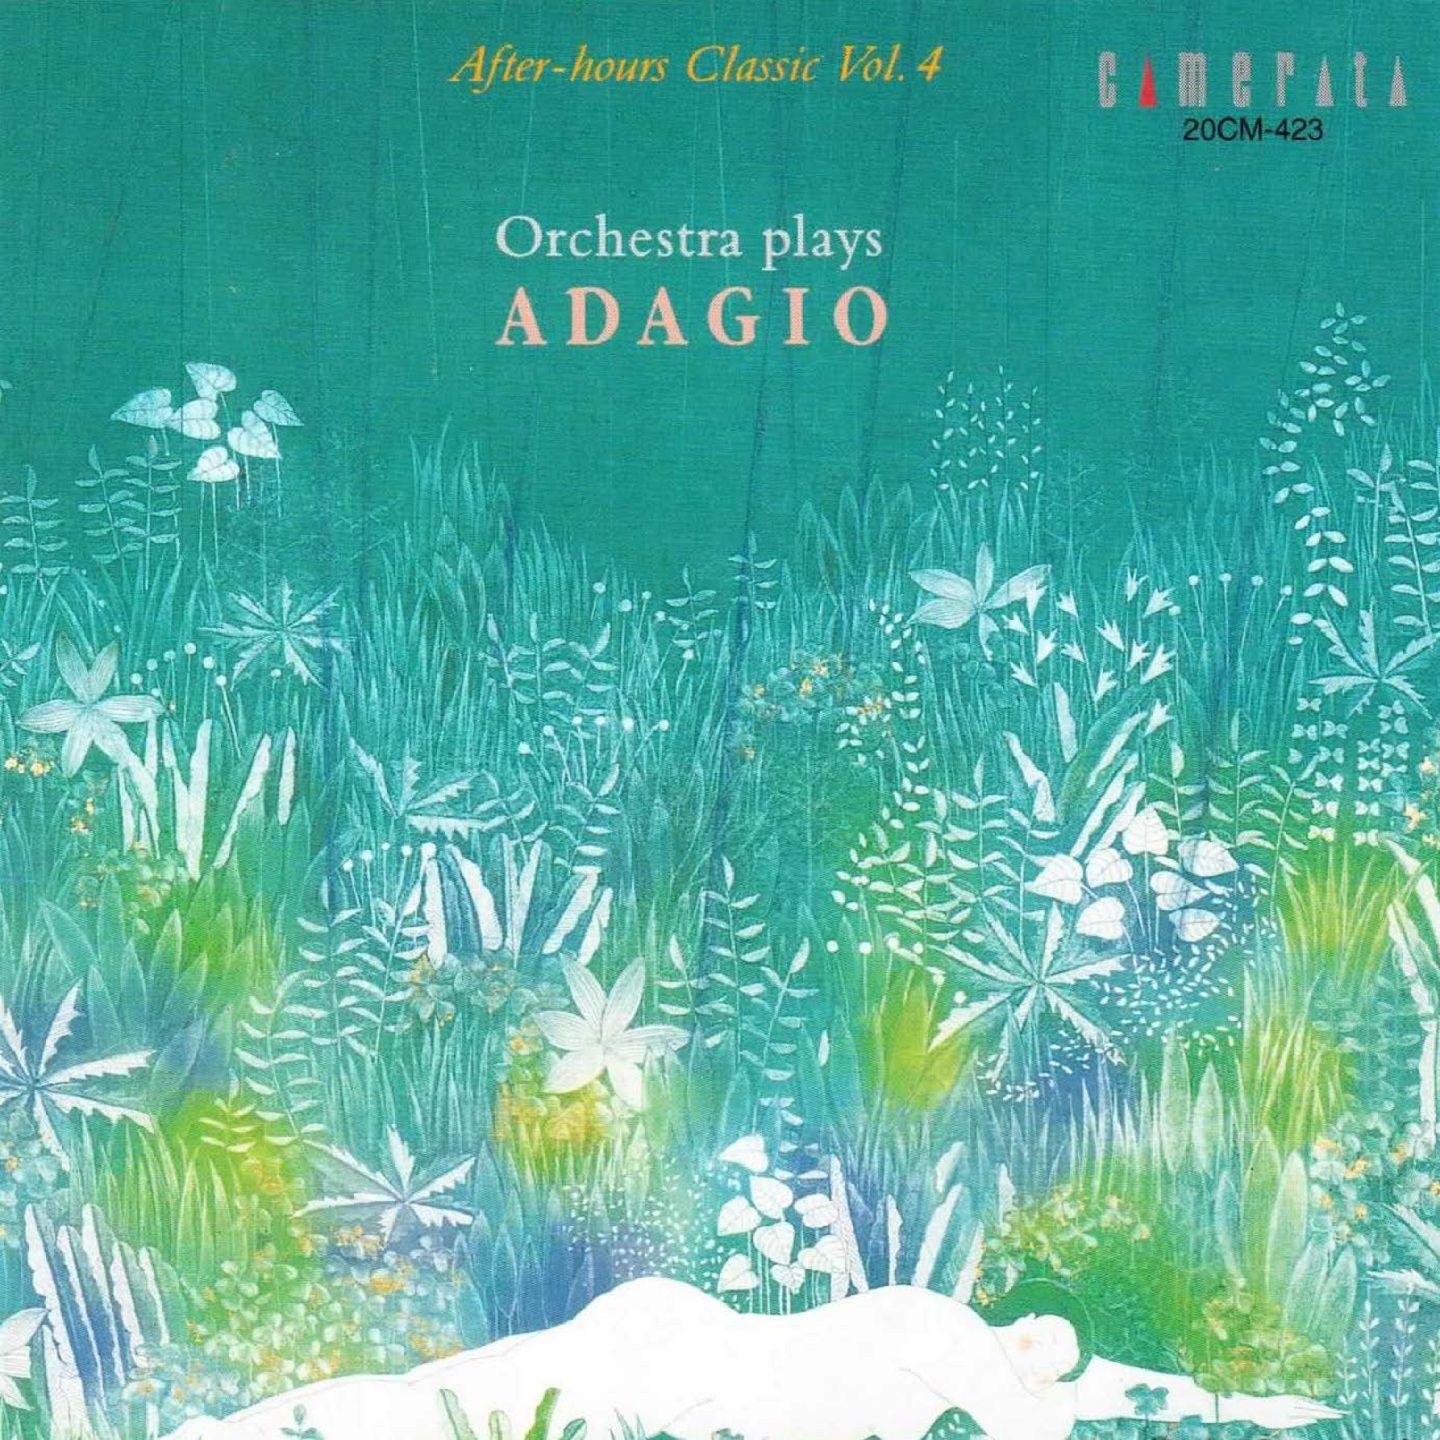 Symphony No. 2 in C Minor: II. Adagio